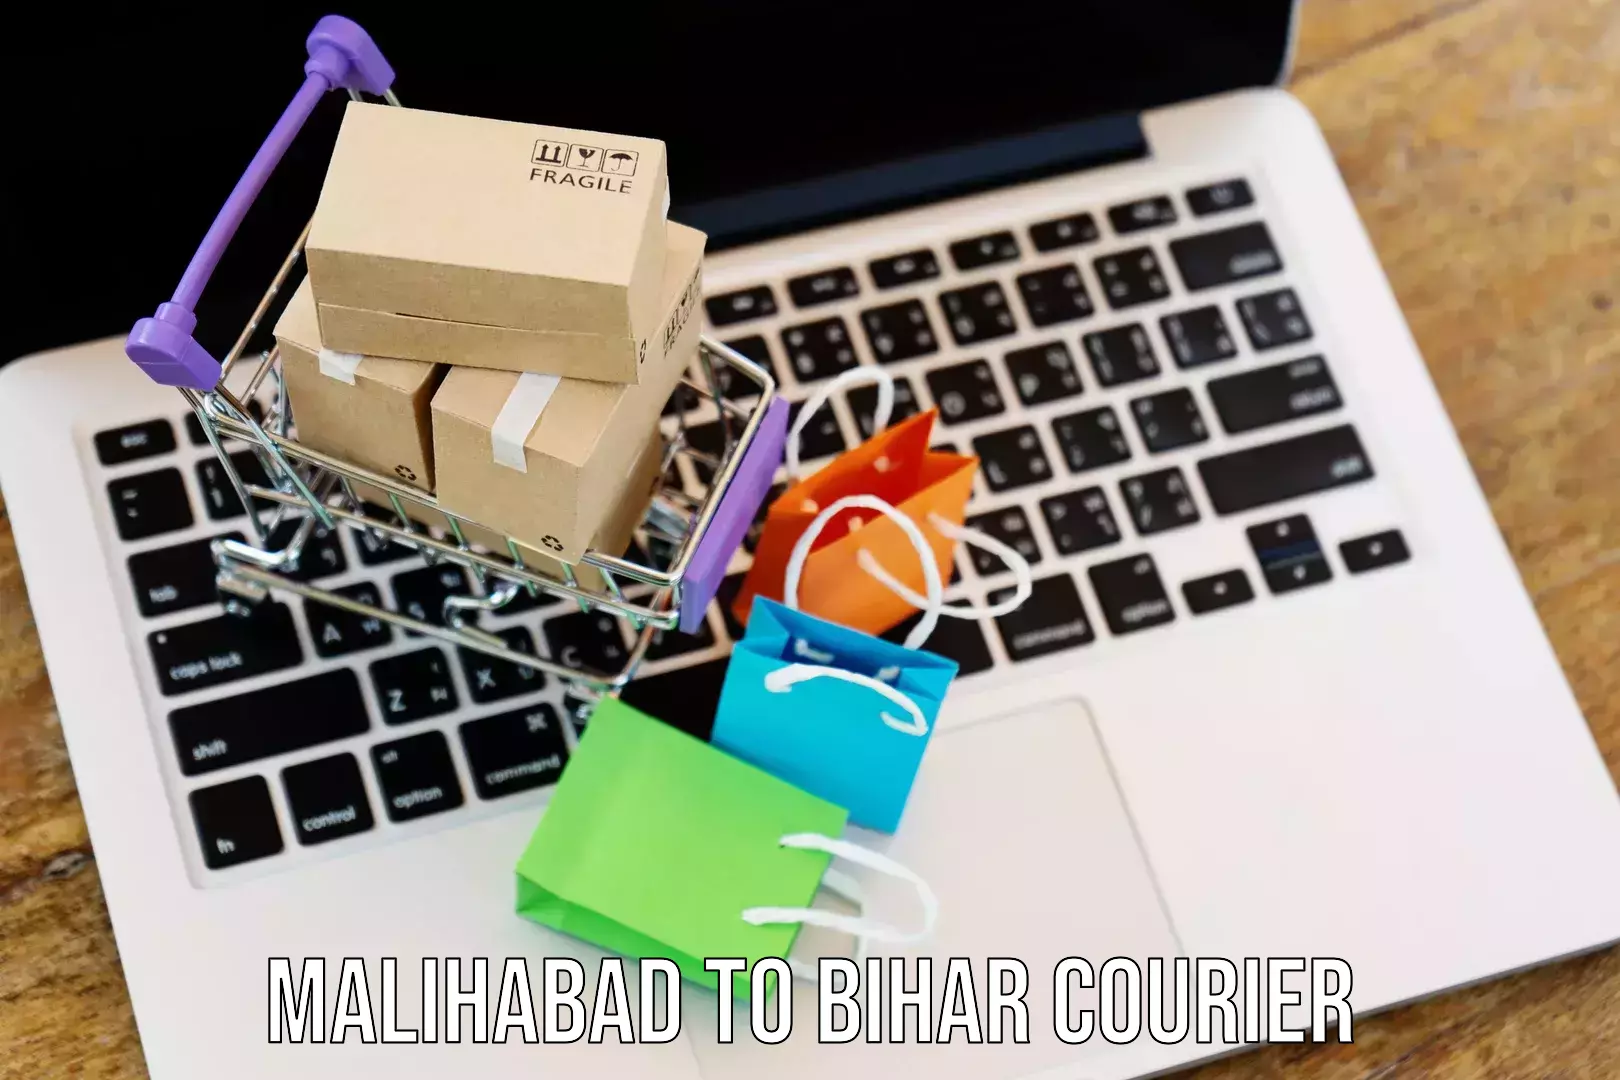 International courier networks Malihabad to Madhubani